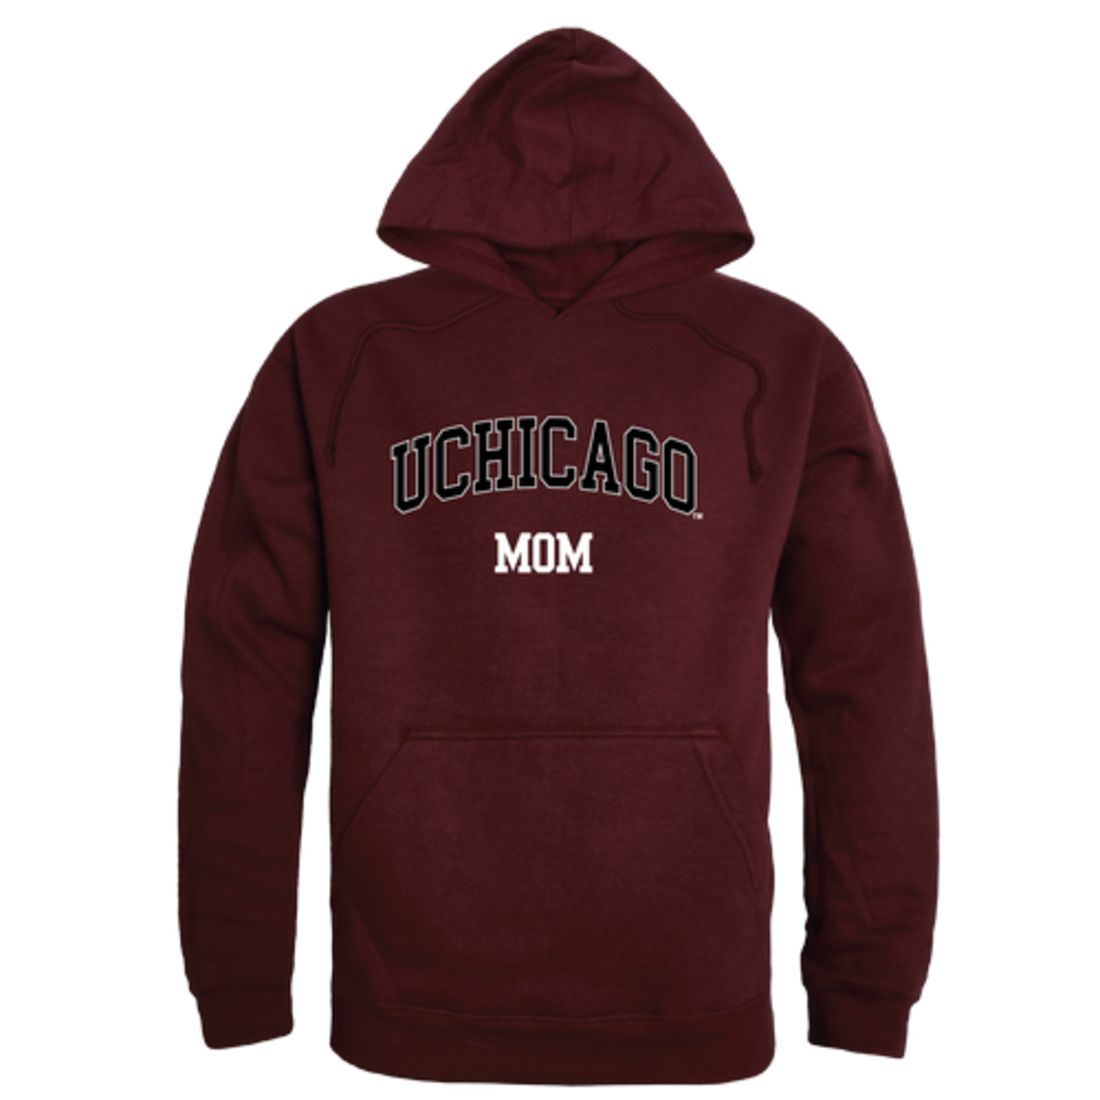 University of Chicago Maroons Mom Fleece Hoodie Sweatshirts